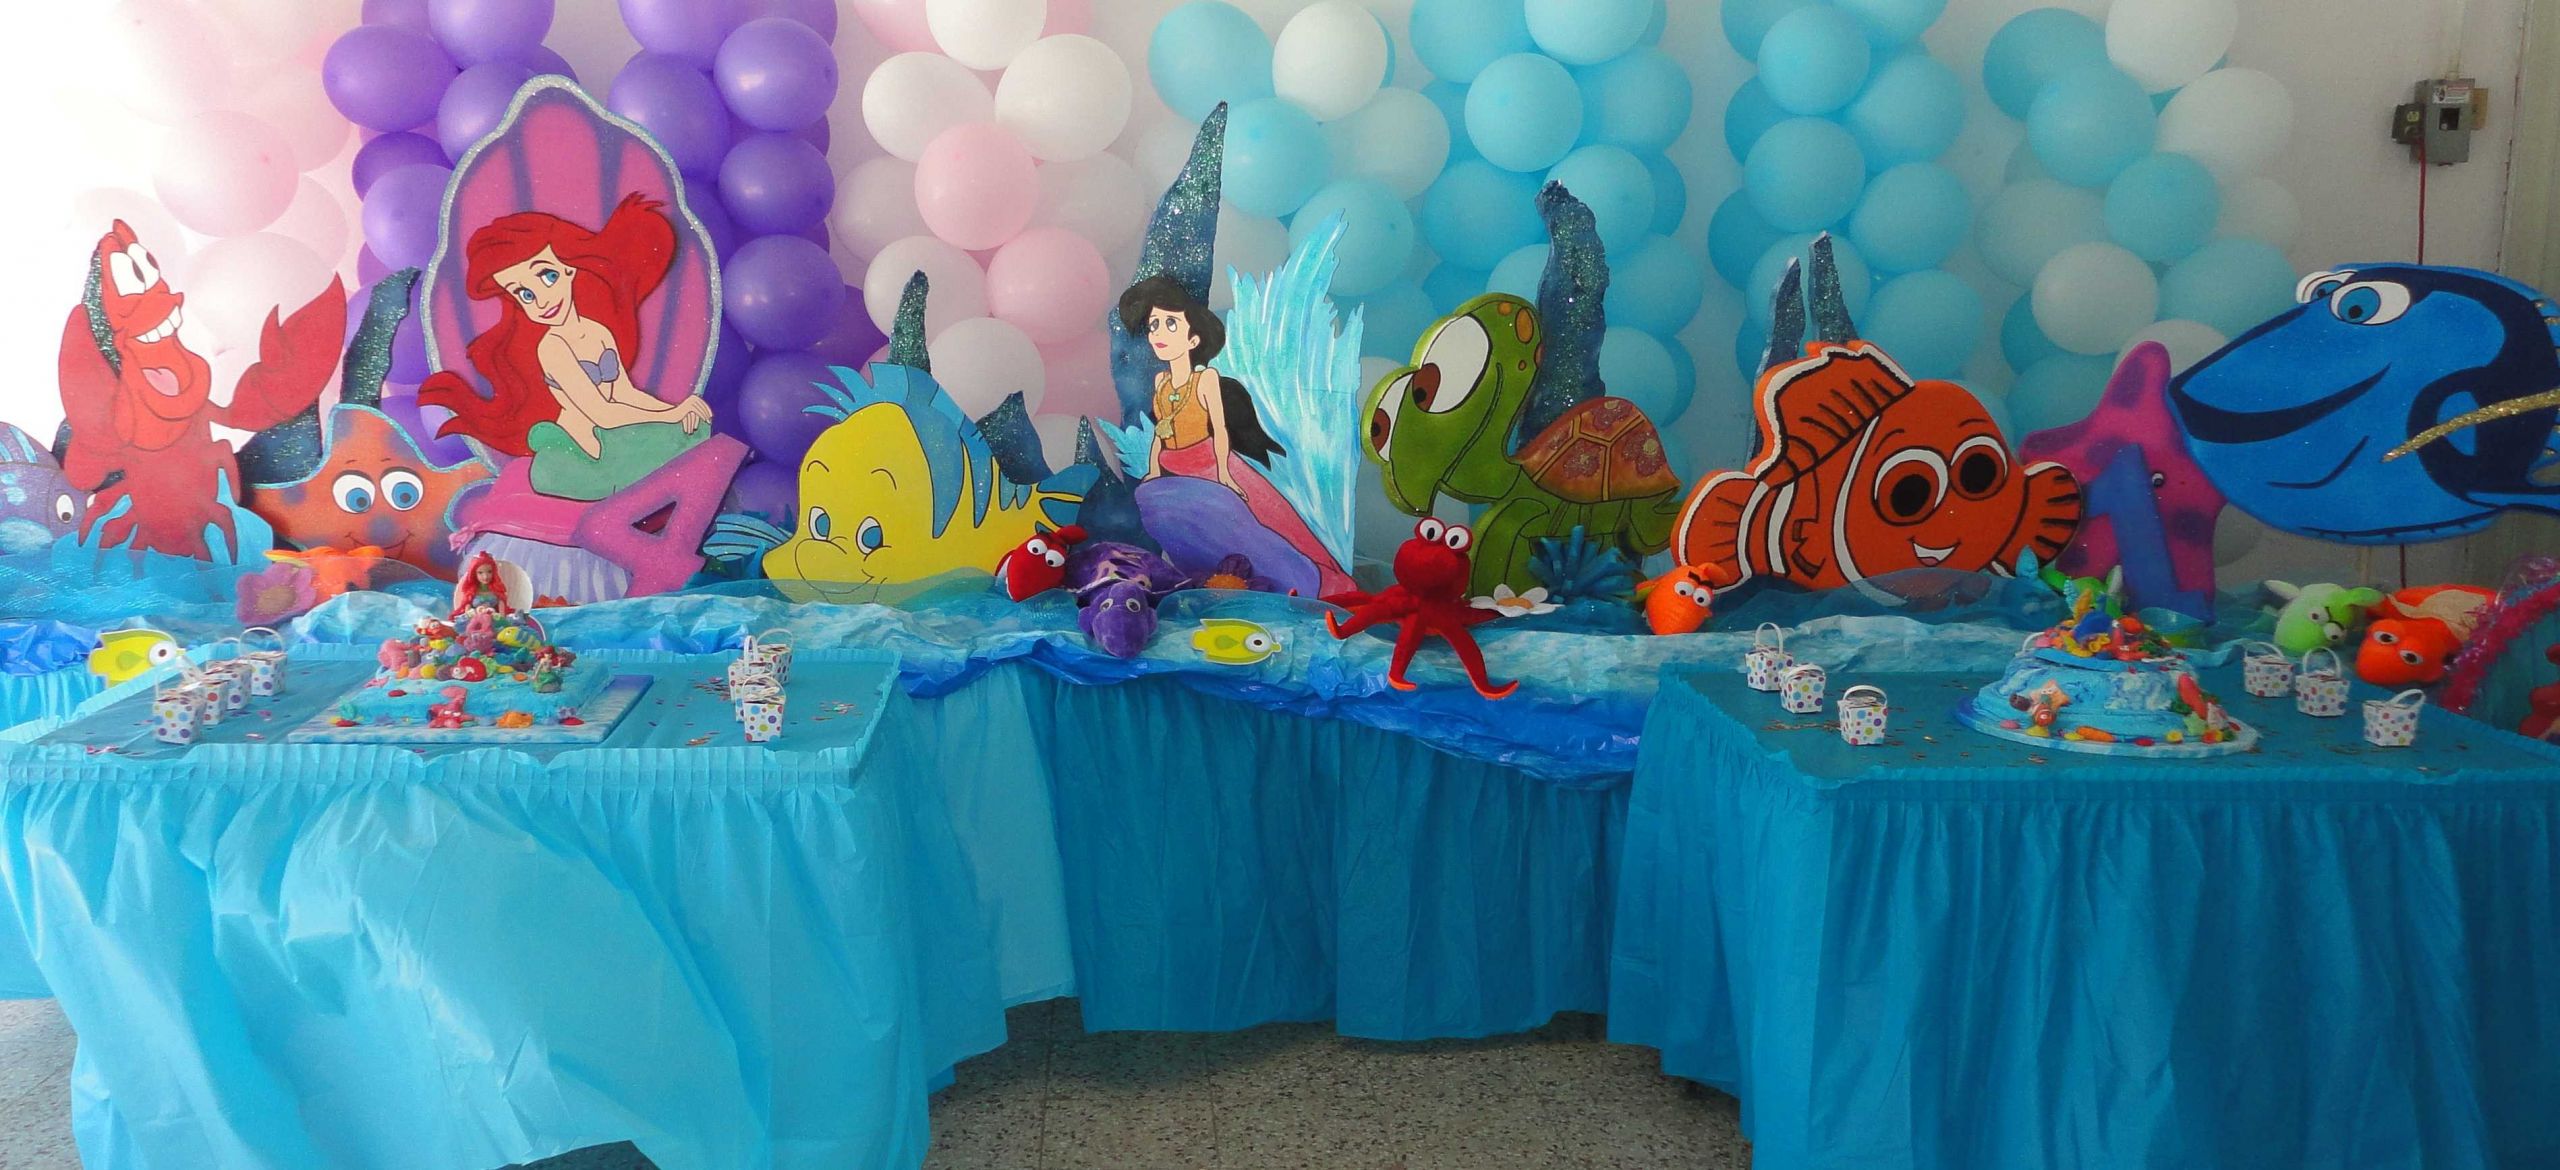 Ariel The Little Mermaid Party Ideas
 Disney Little Mermaid Ariel 3 ft Prop Standee